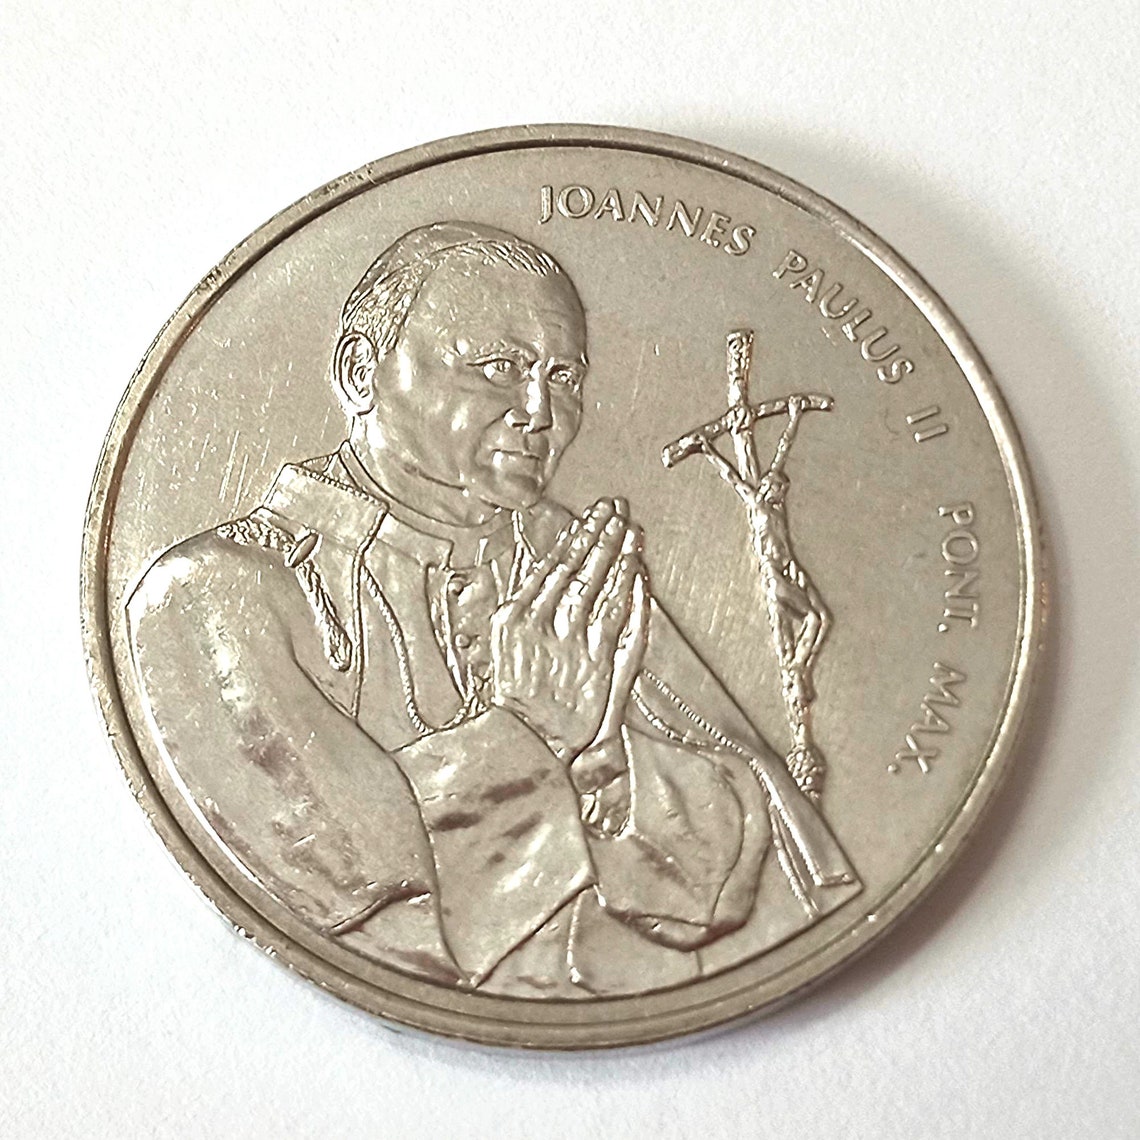 papal visit coin 1984